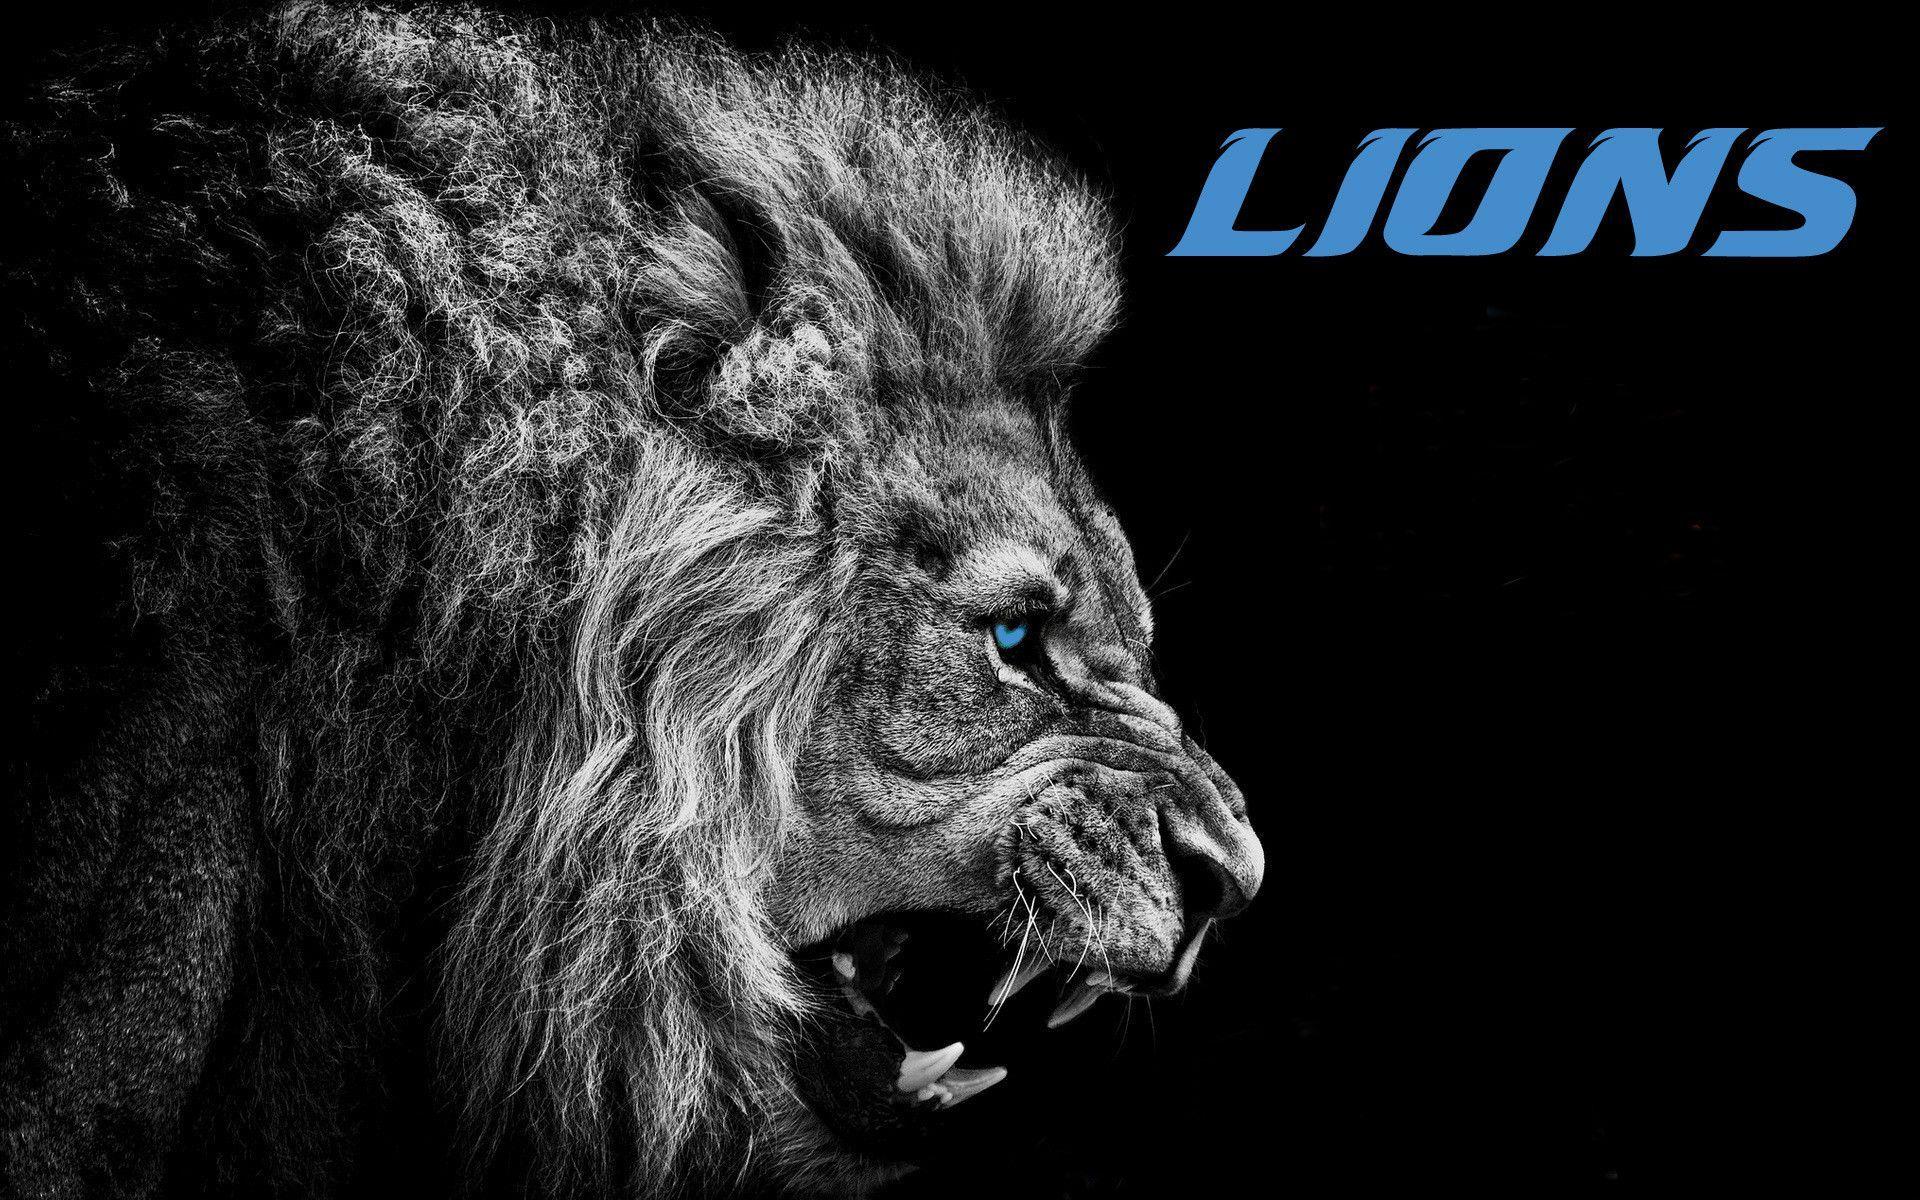 Detroit Lions Wallpaper HD (Picture)